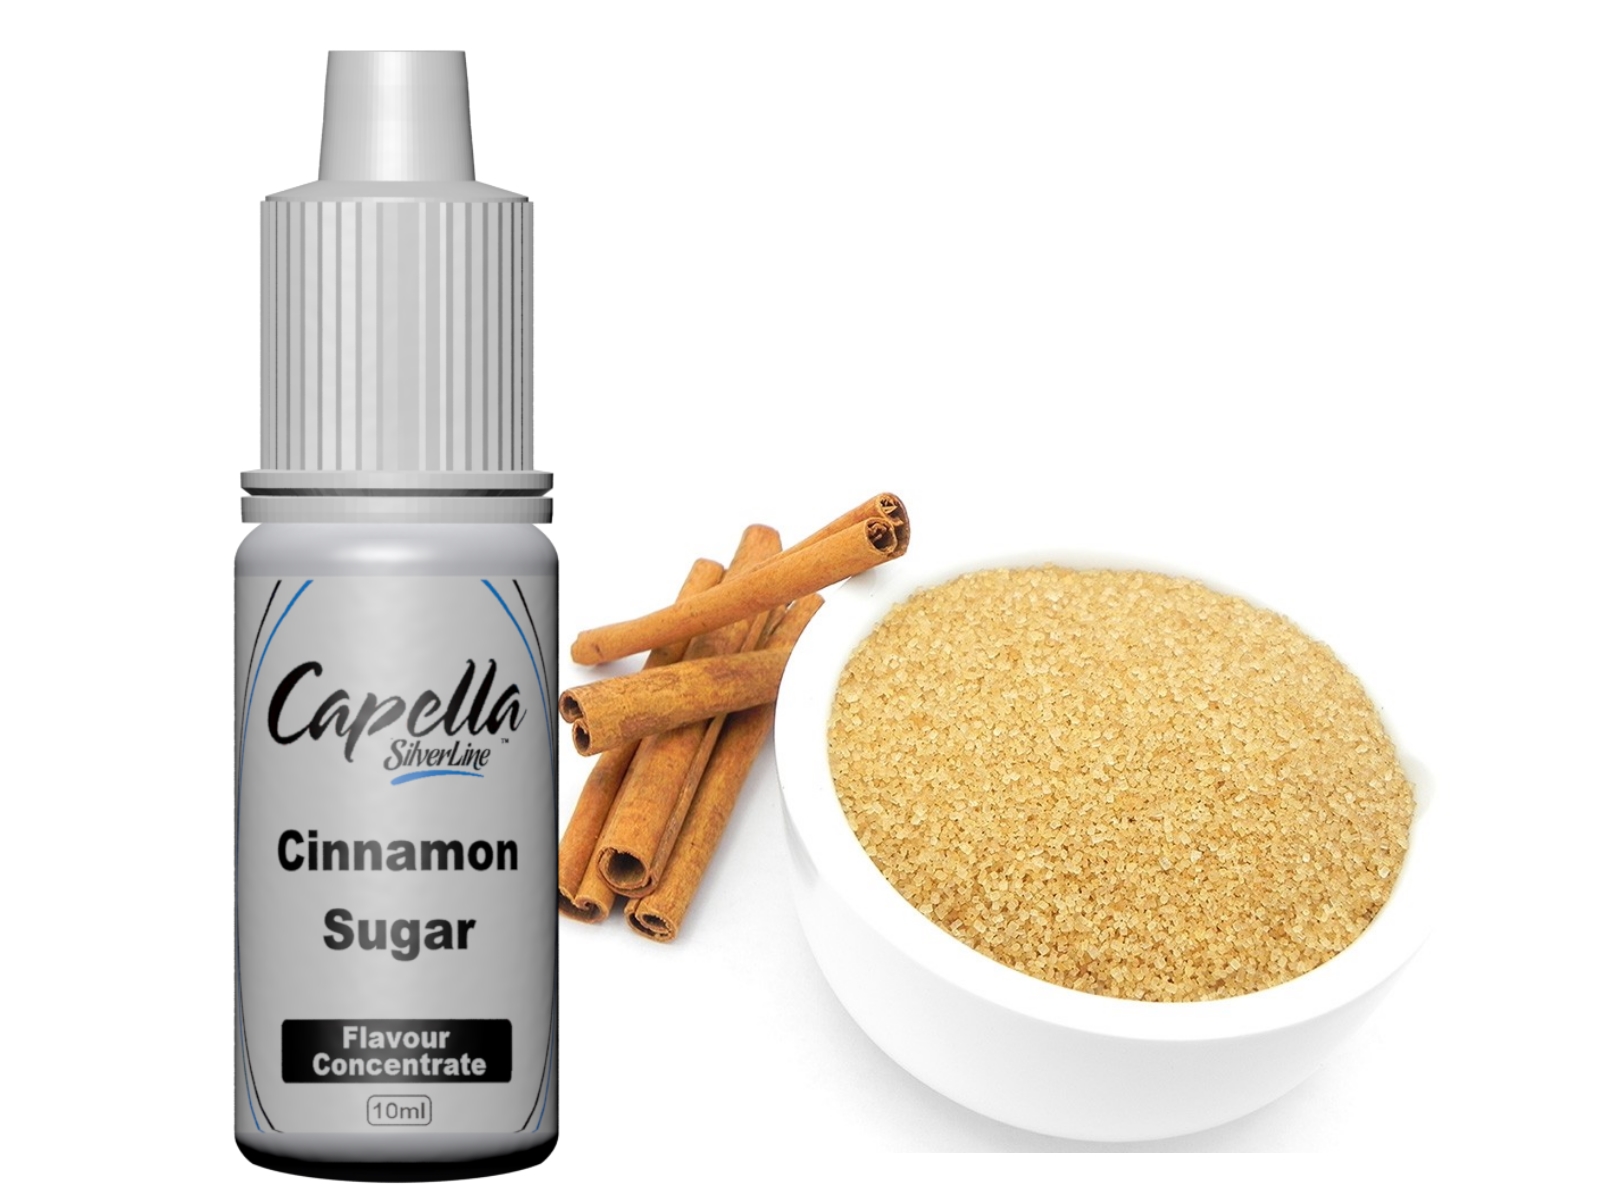 Capella Silverline Cinnamon Sugar